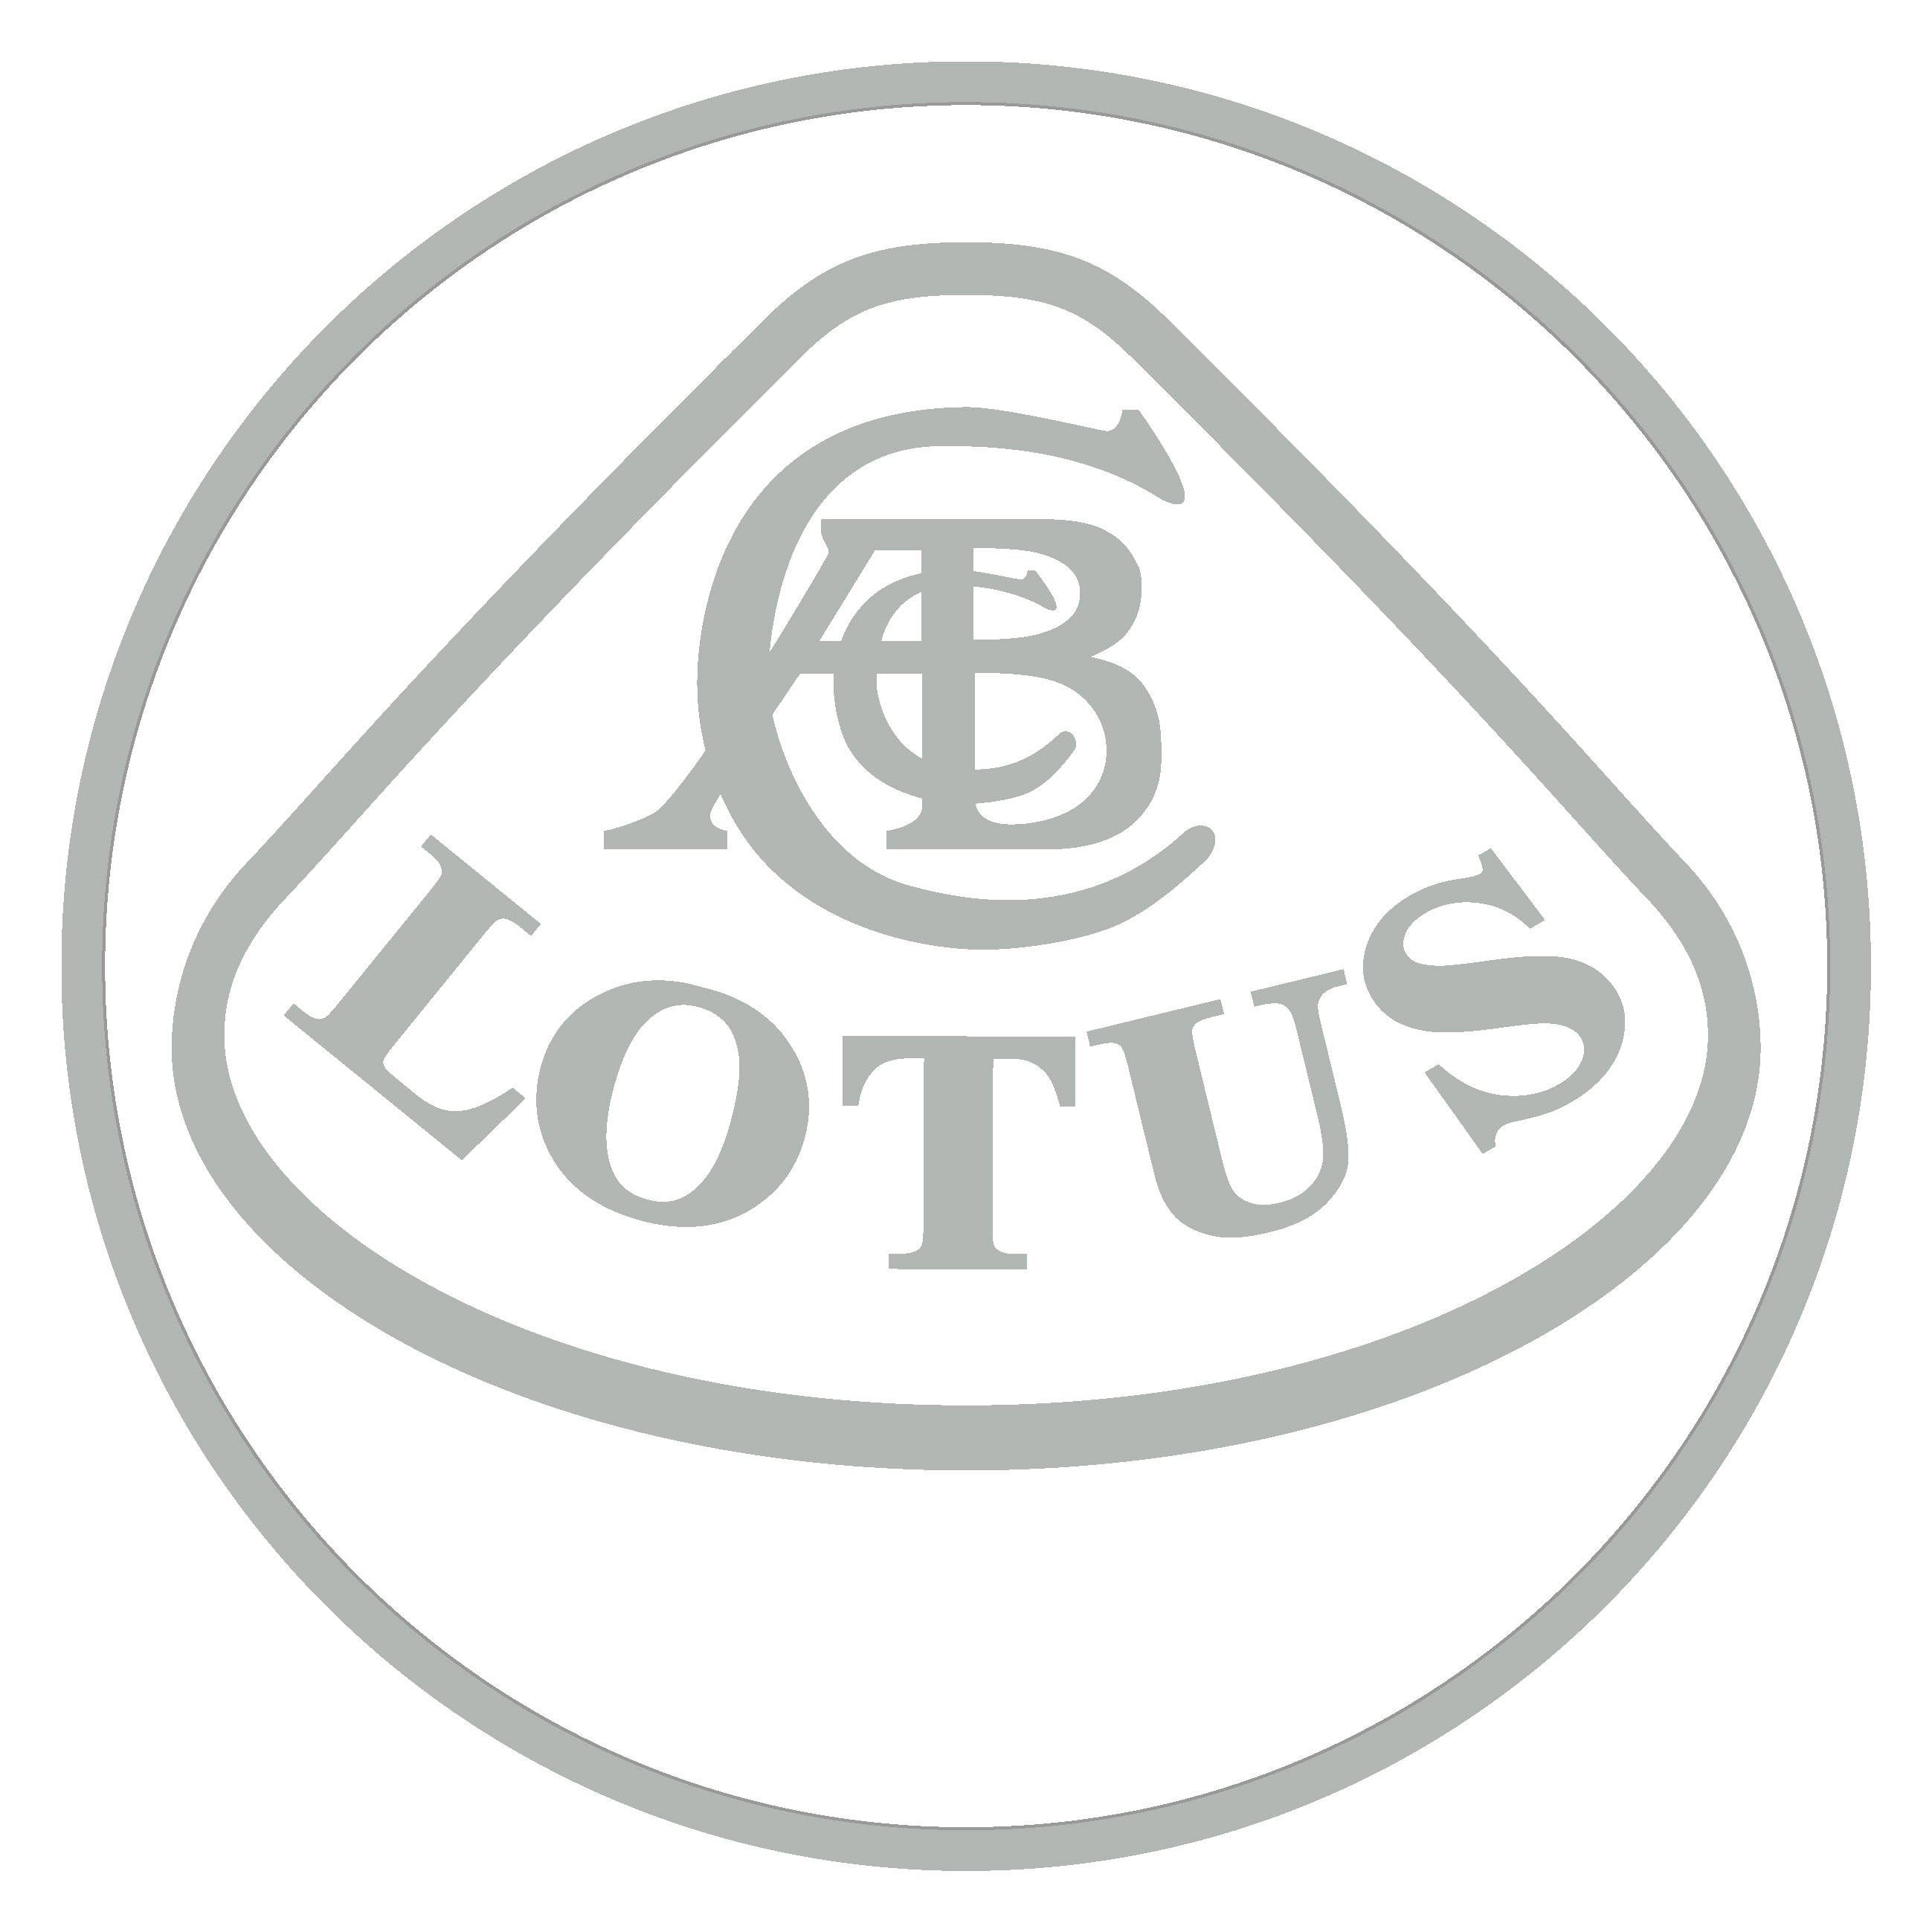 Logo distintivo del nostro forum - Pagina 5 Logo_Lotus_gris_hd